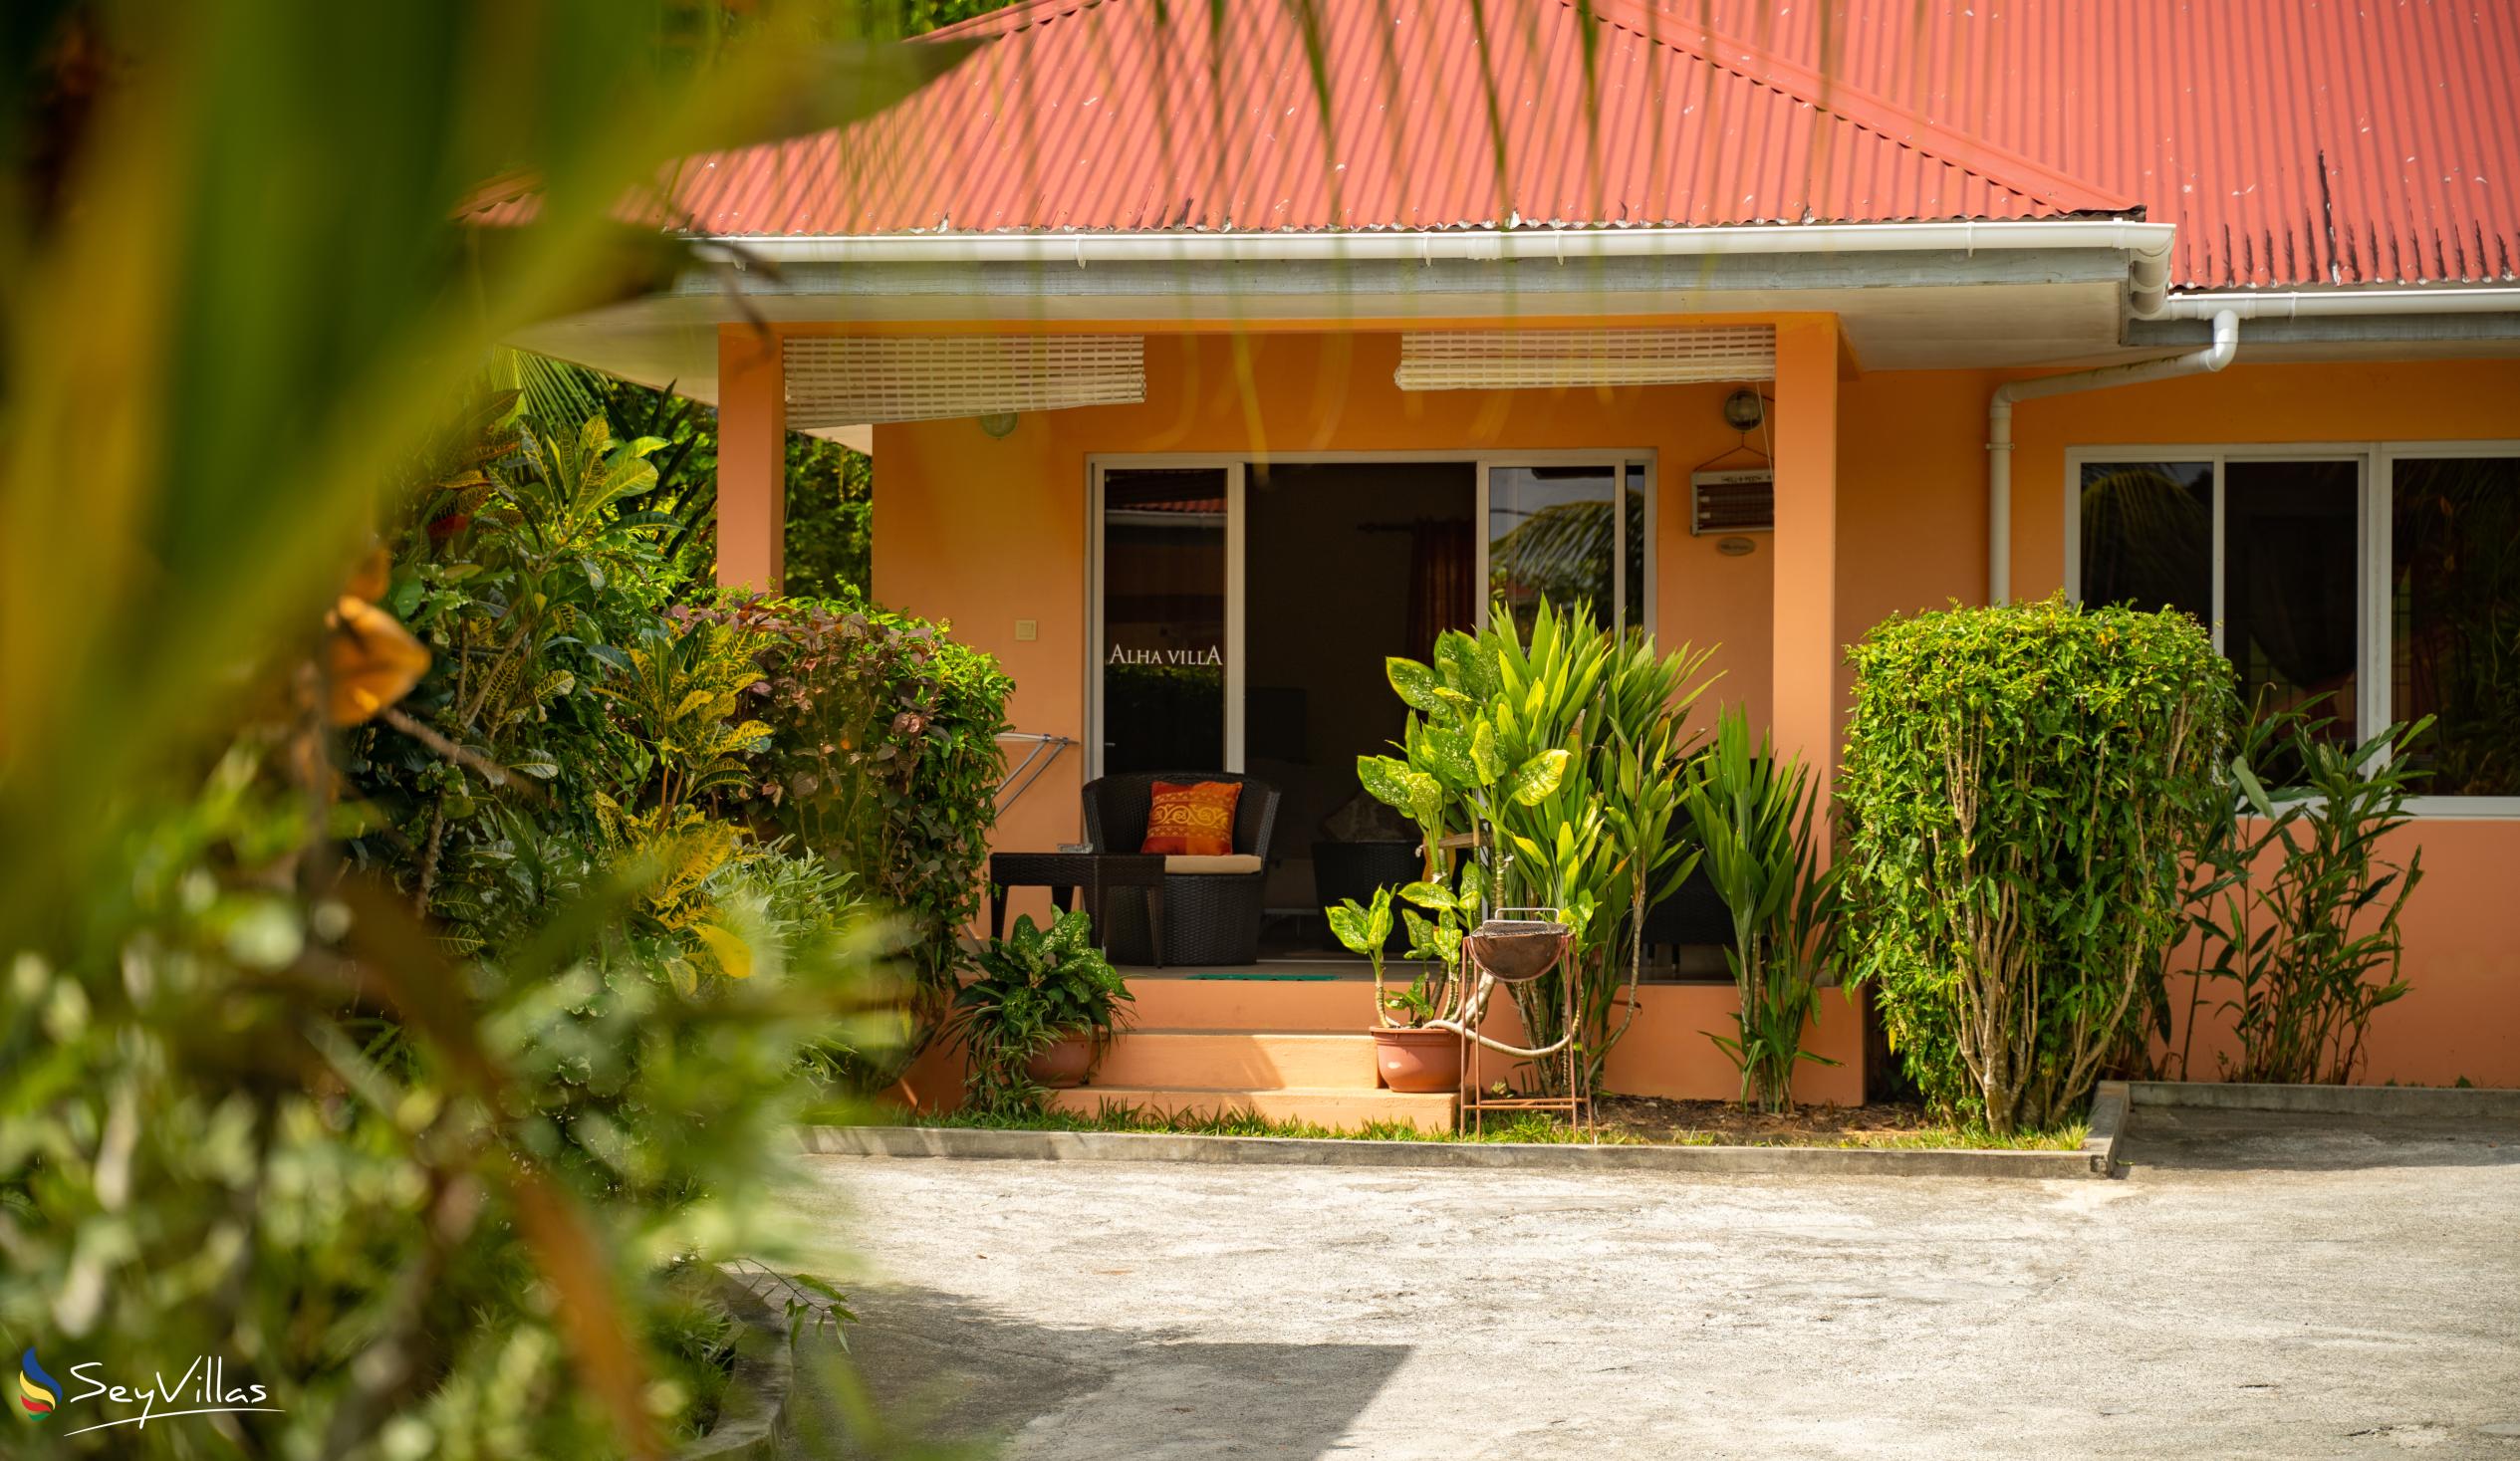 Foto 15: Alha Villa - Aussenbereich - Mahé (Seychellen)